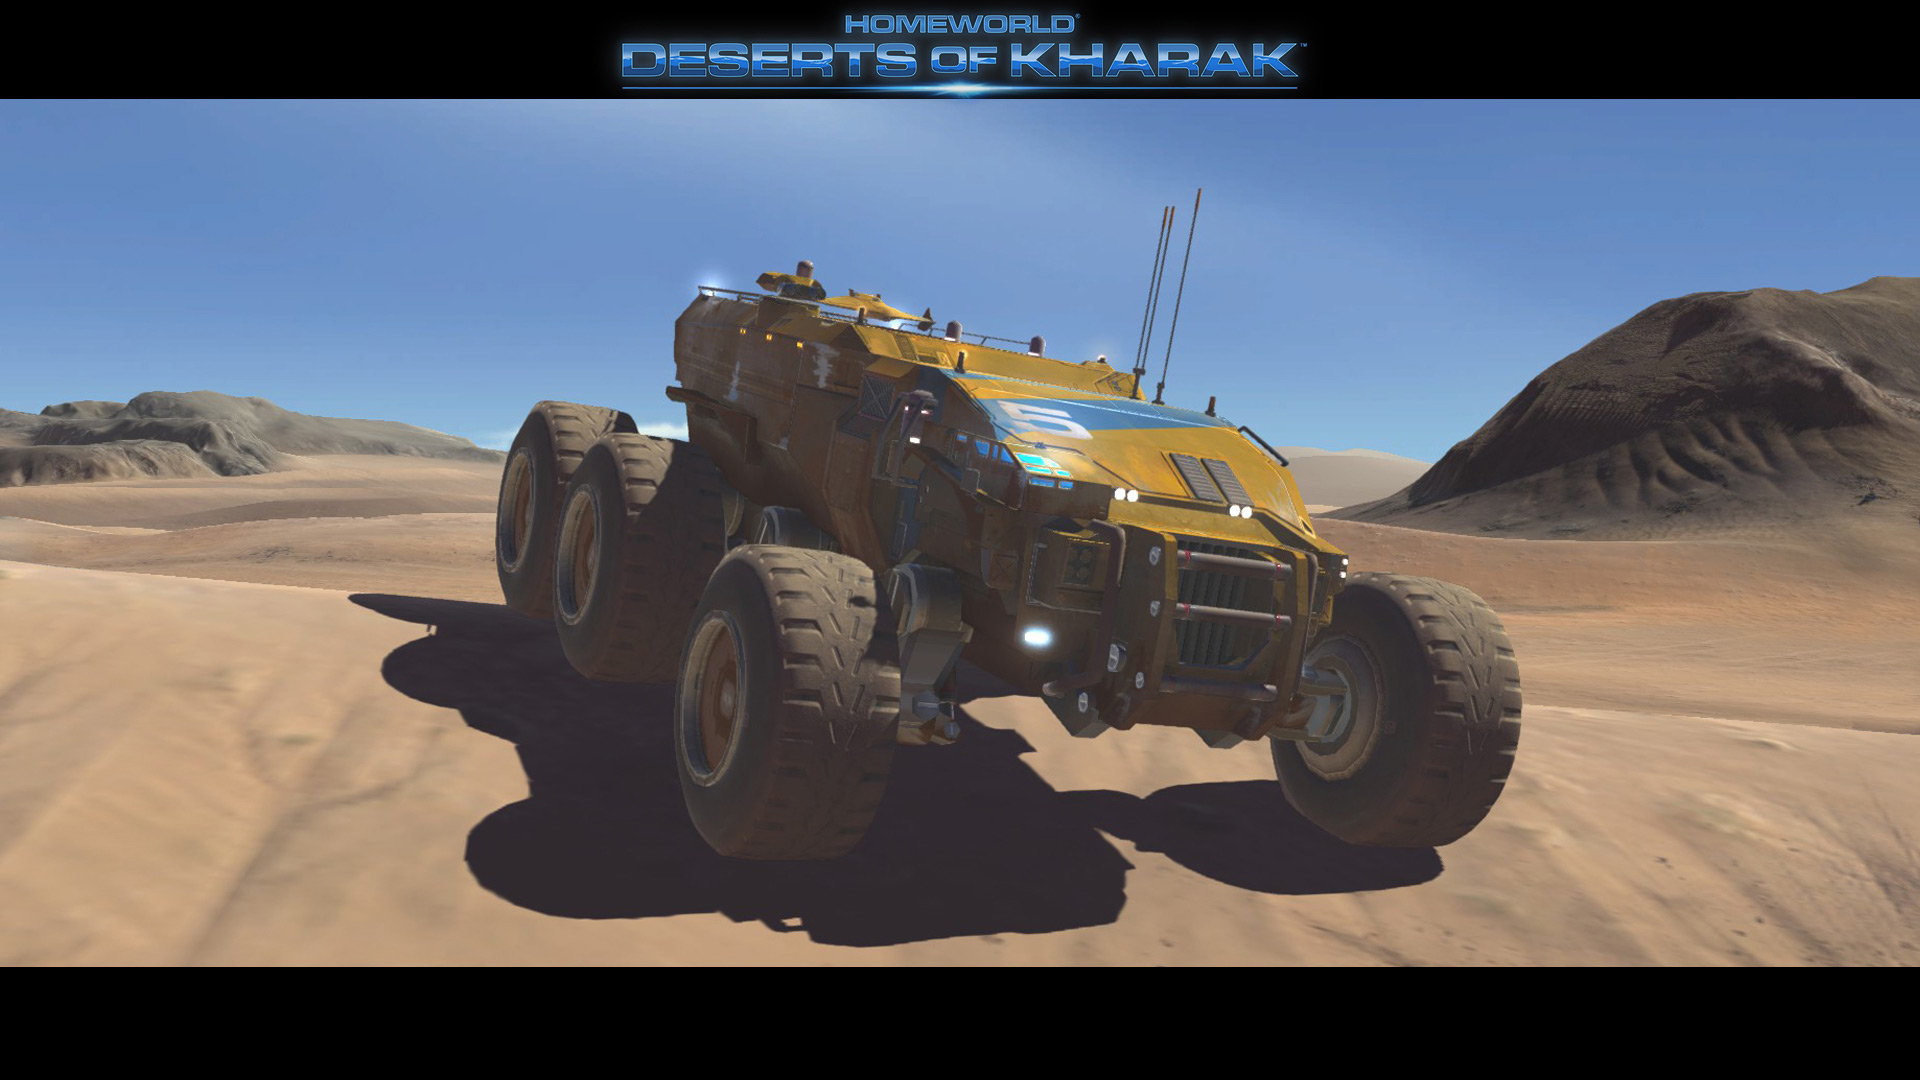 Homeworld: Deserts Of Kharak HD wallpapers, Desktop wallpaper - most viewed